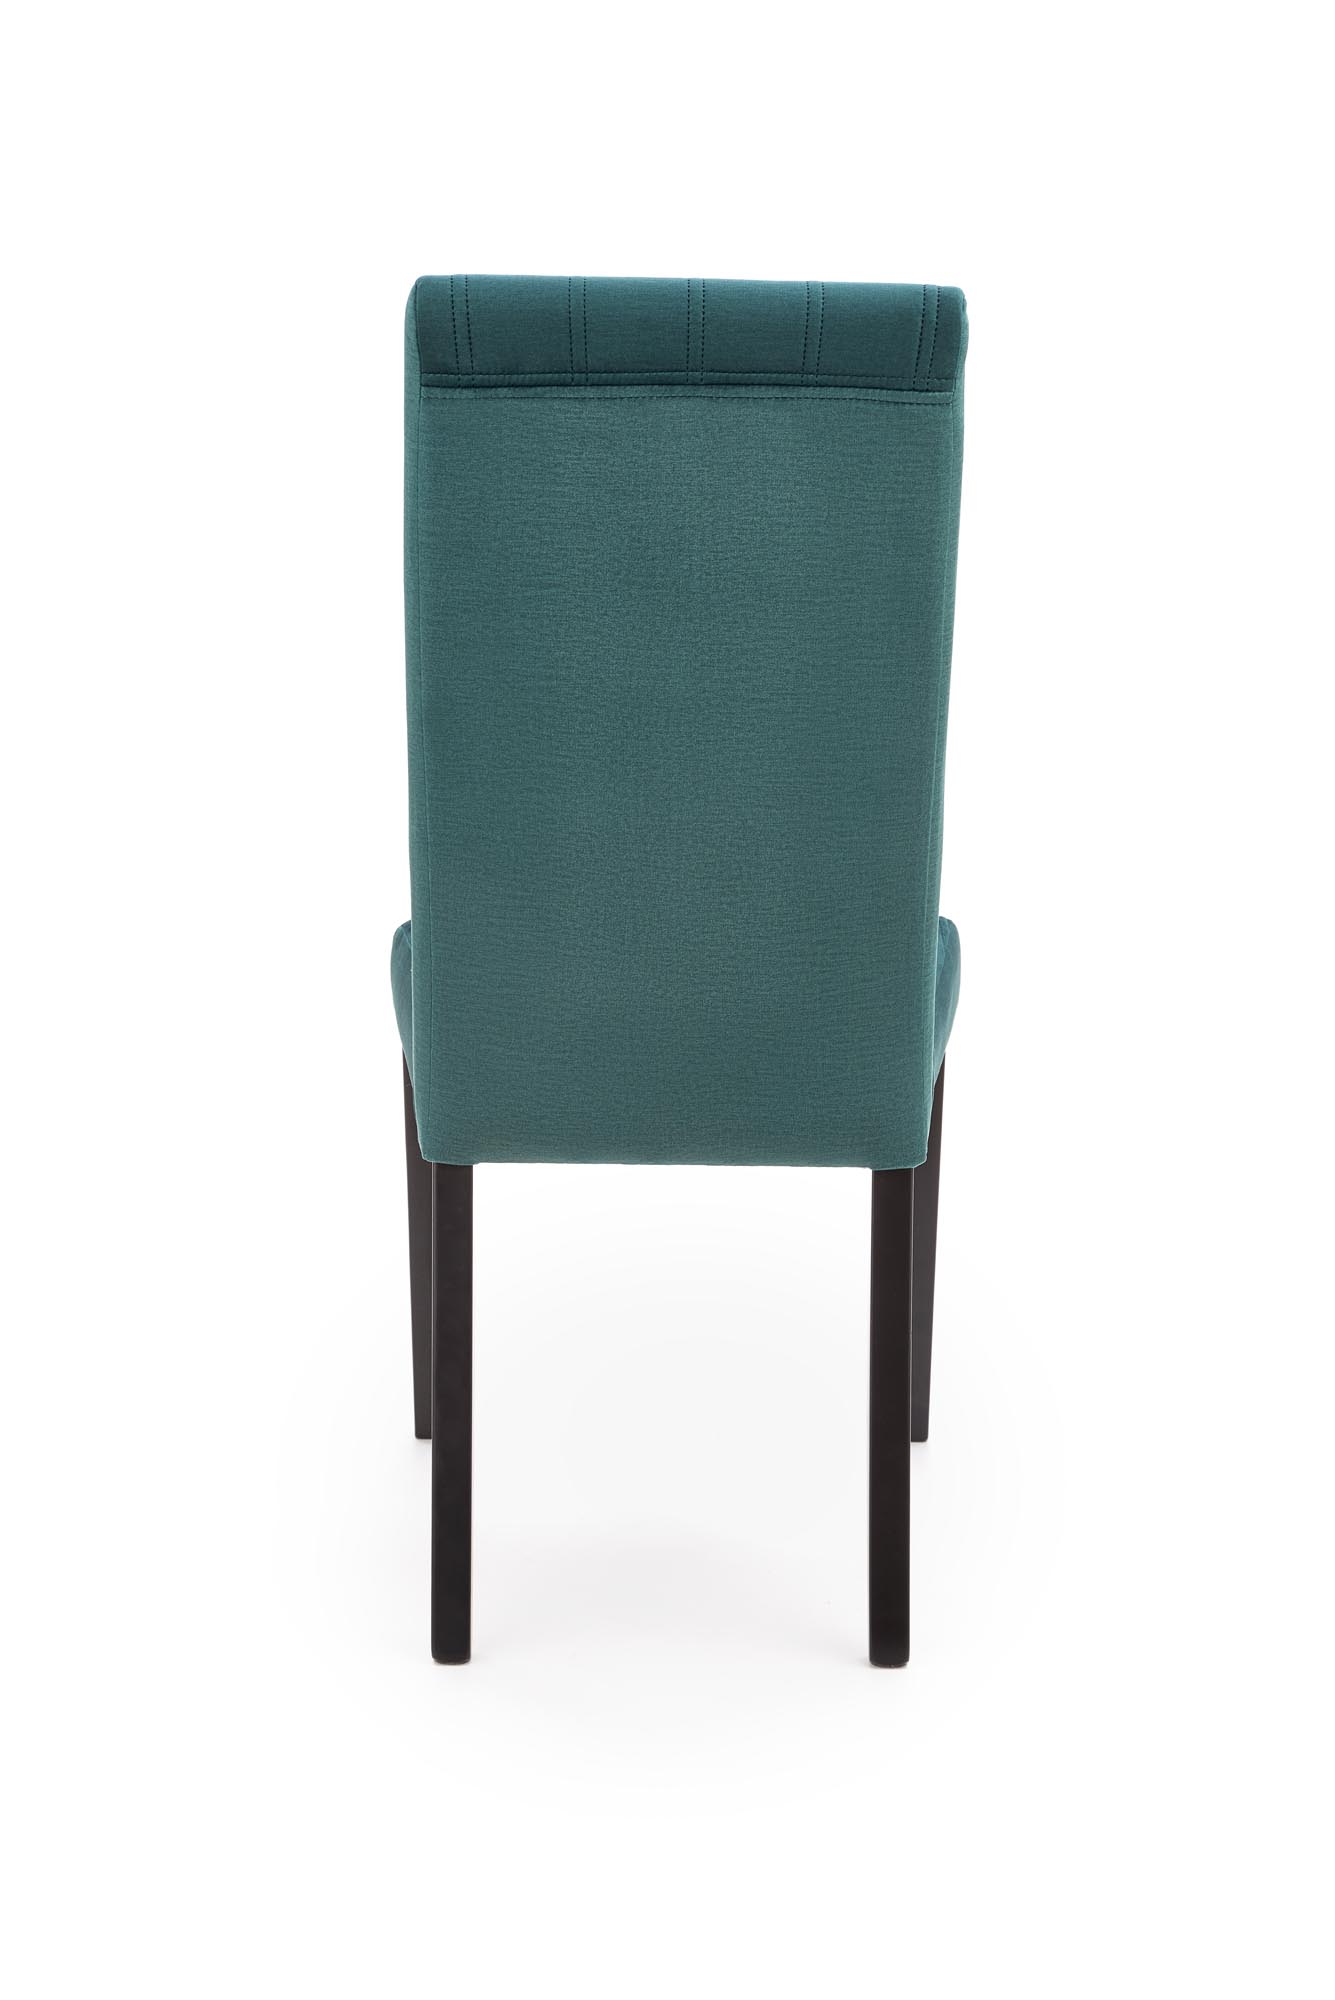 DIEGO 2 Židle Černá / čal. velvet prošívané Pruhy - MONOLITH 37 (tmavý zelený) diego 2 Židle Černý / tap. velvet prošívané pasy - monolith 37 (tmavý Zelený)